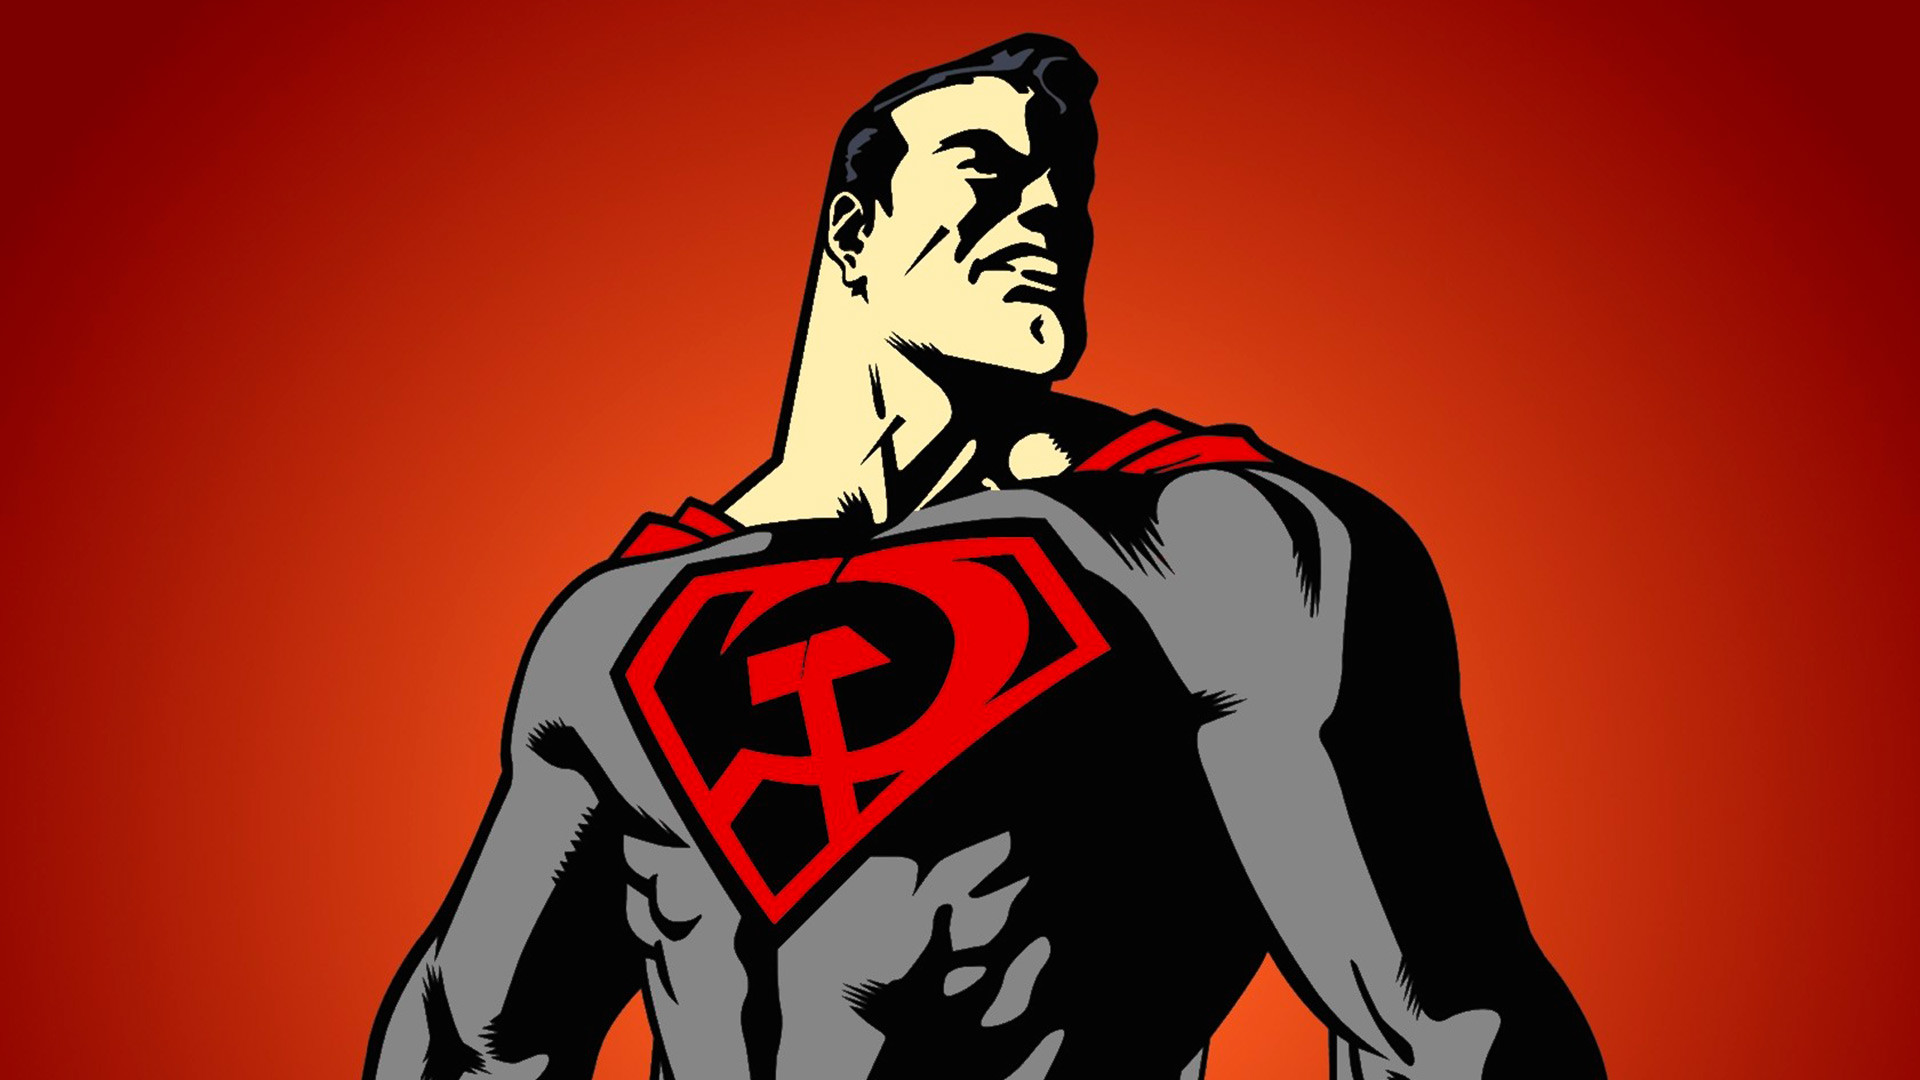 ワーナー ブラザーズが スーパーマン レッド サン を映画化 何が期待できるか ロシア ビヨンド